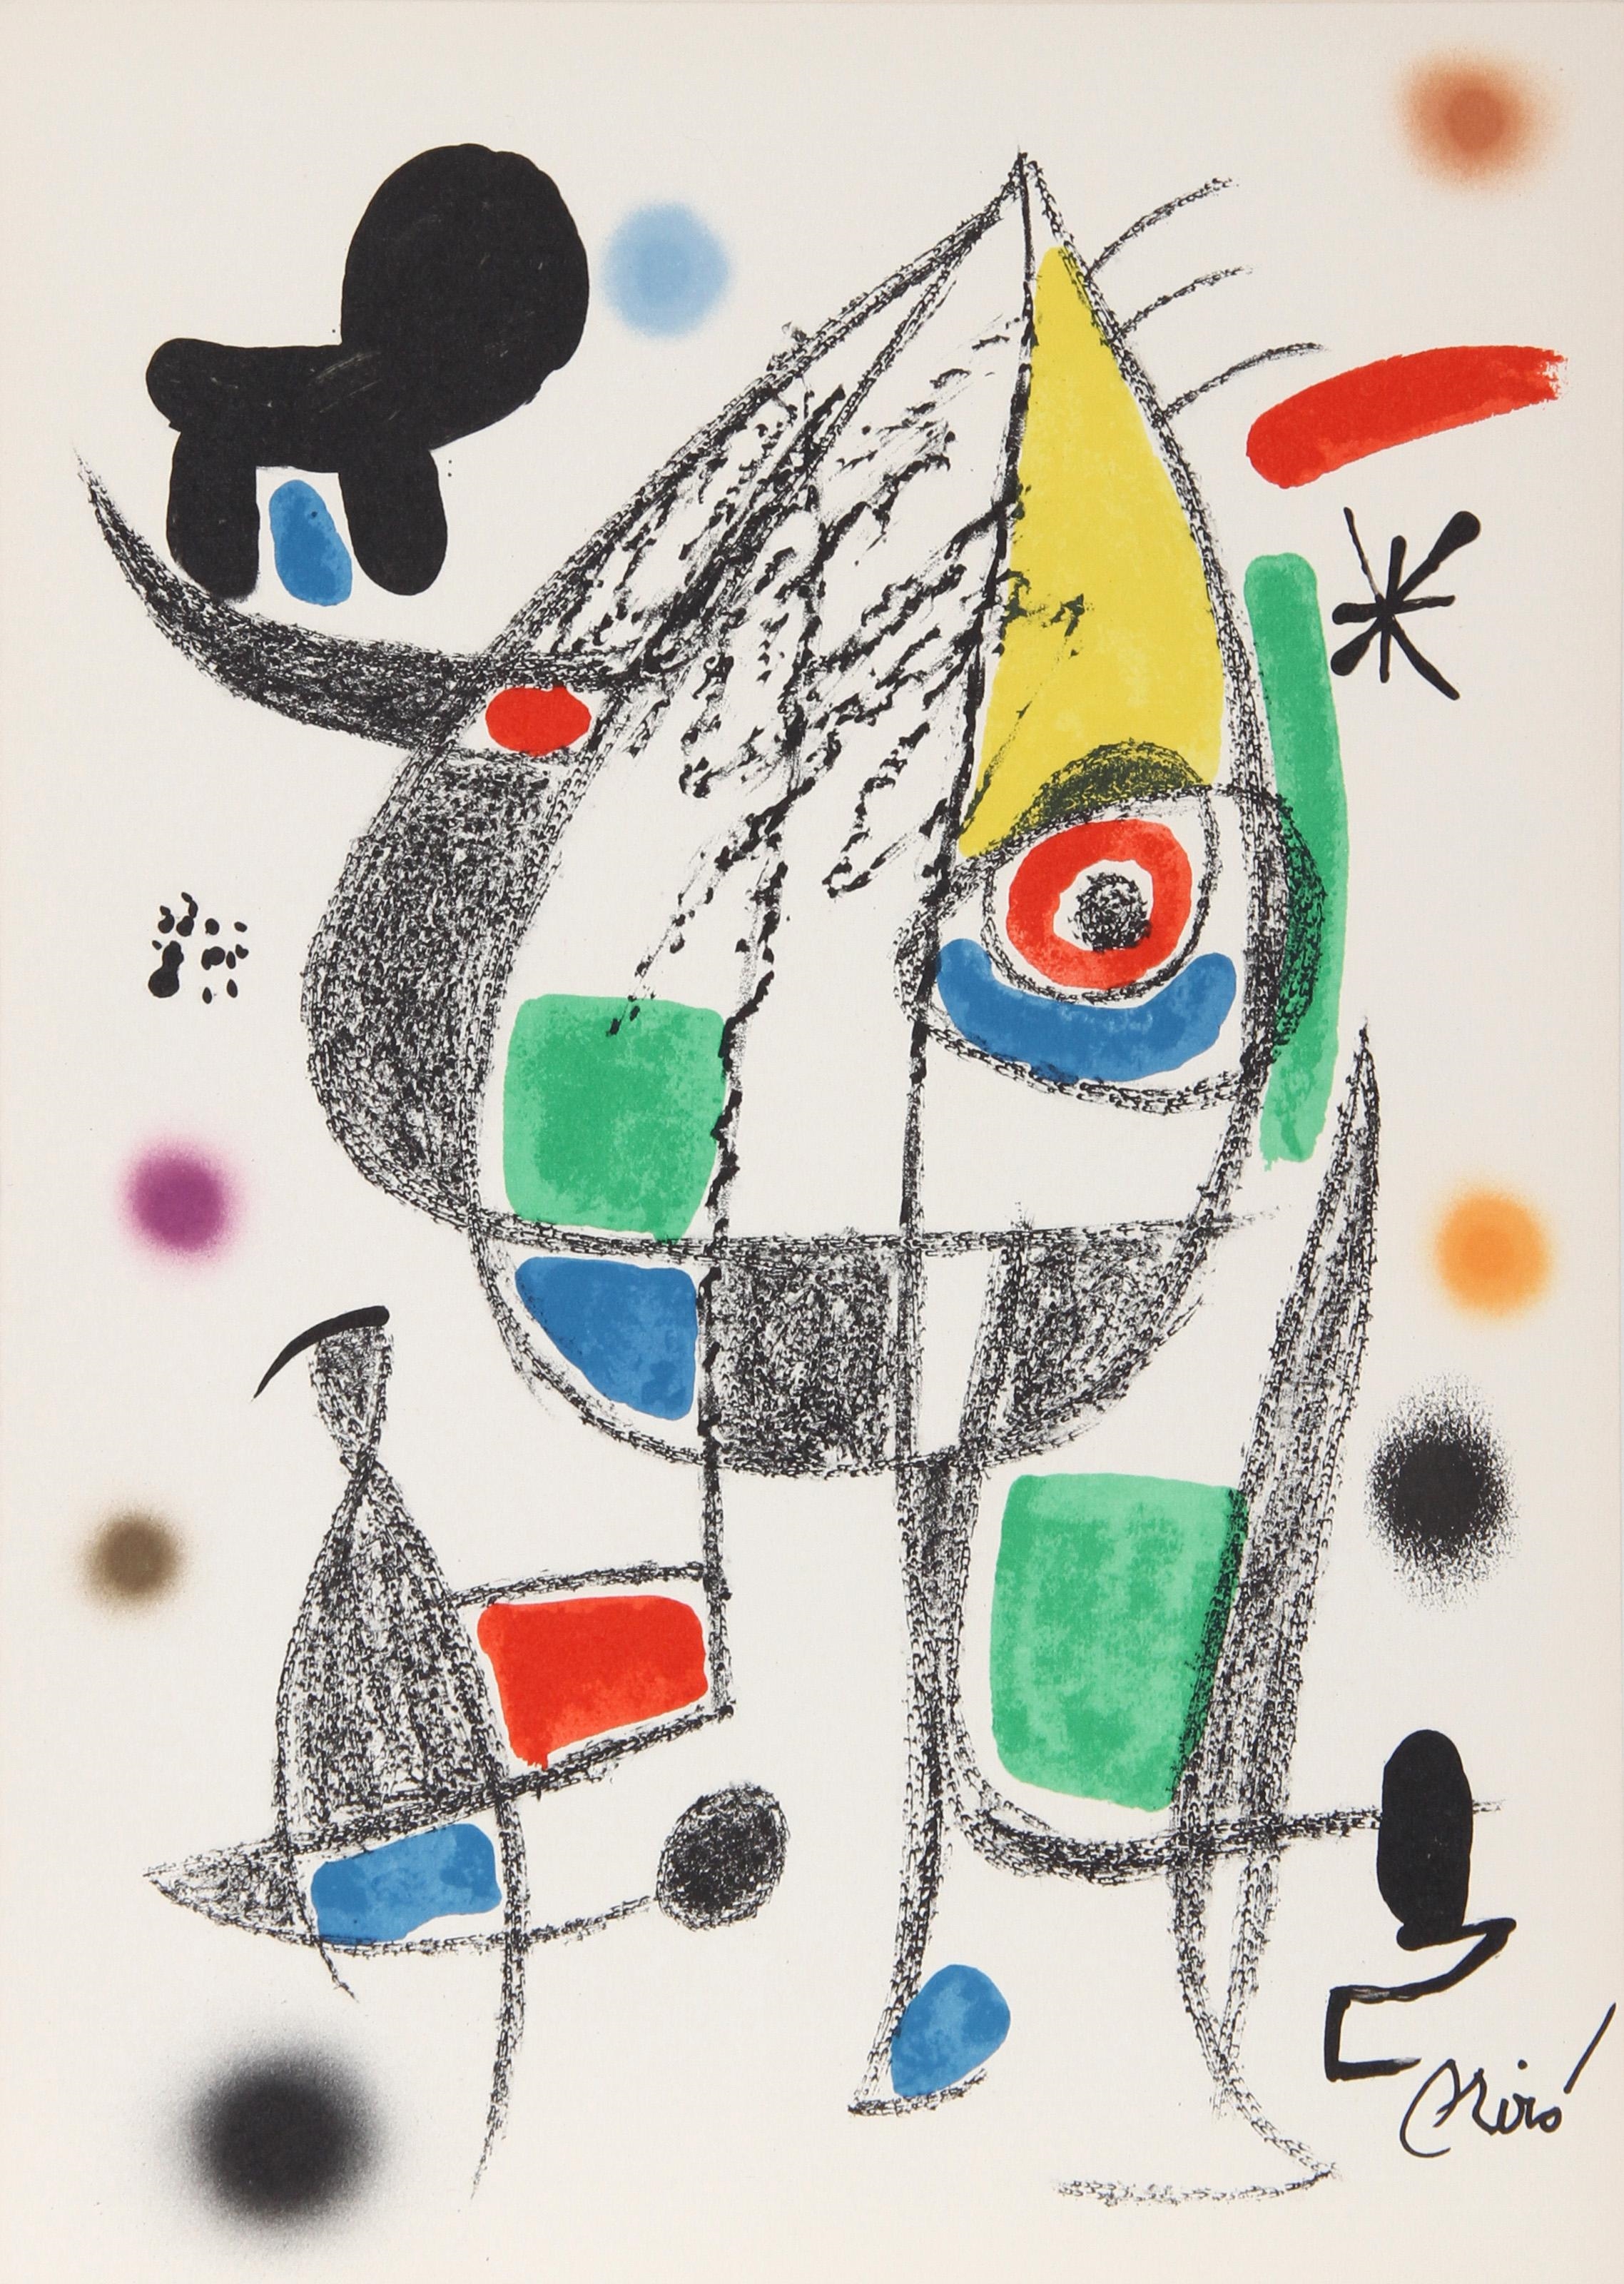 Maravillas con Variaciones Acrosticas en el jardin de Miro by Joan Miró, 1975